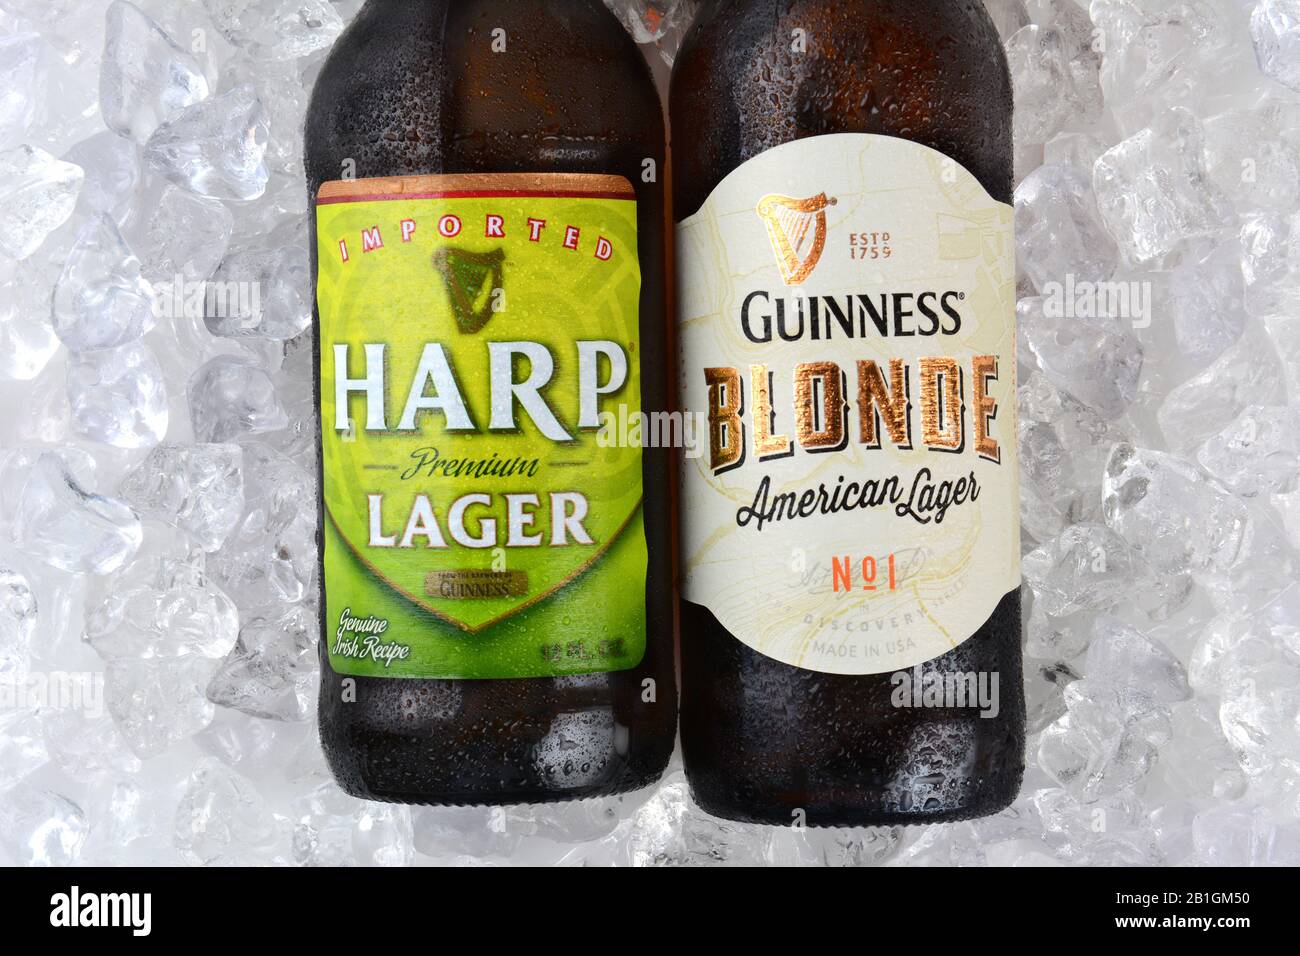 Irvine, CA - 11 DE ENERO de 2015: Una botella de Harp Lager y Guinness Blond closeup en una cama de hielo. Ambos lagers son hechos por el Guinness Brewing Compan Foto de stock